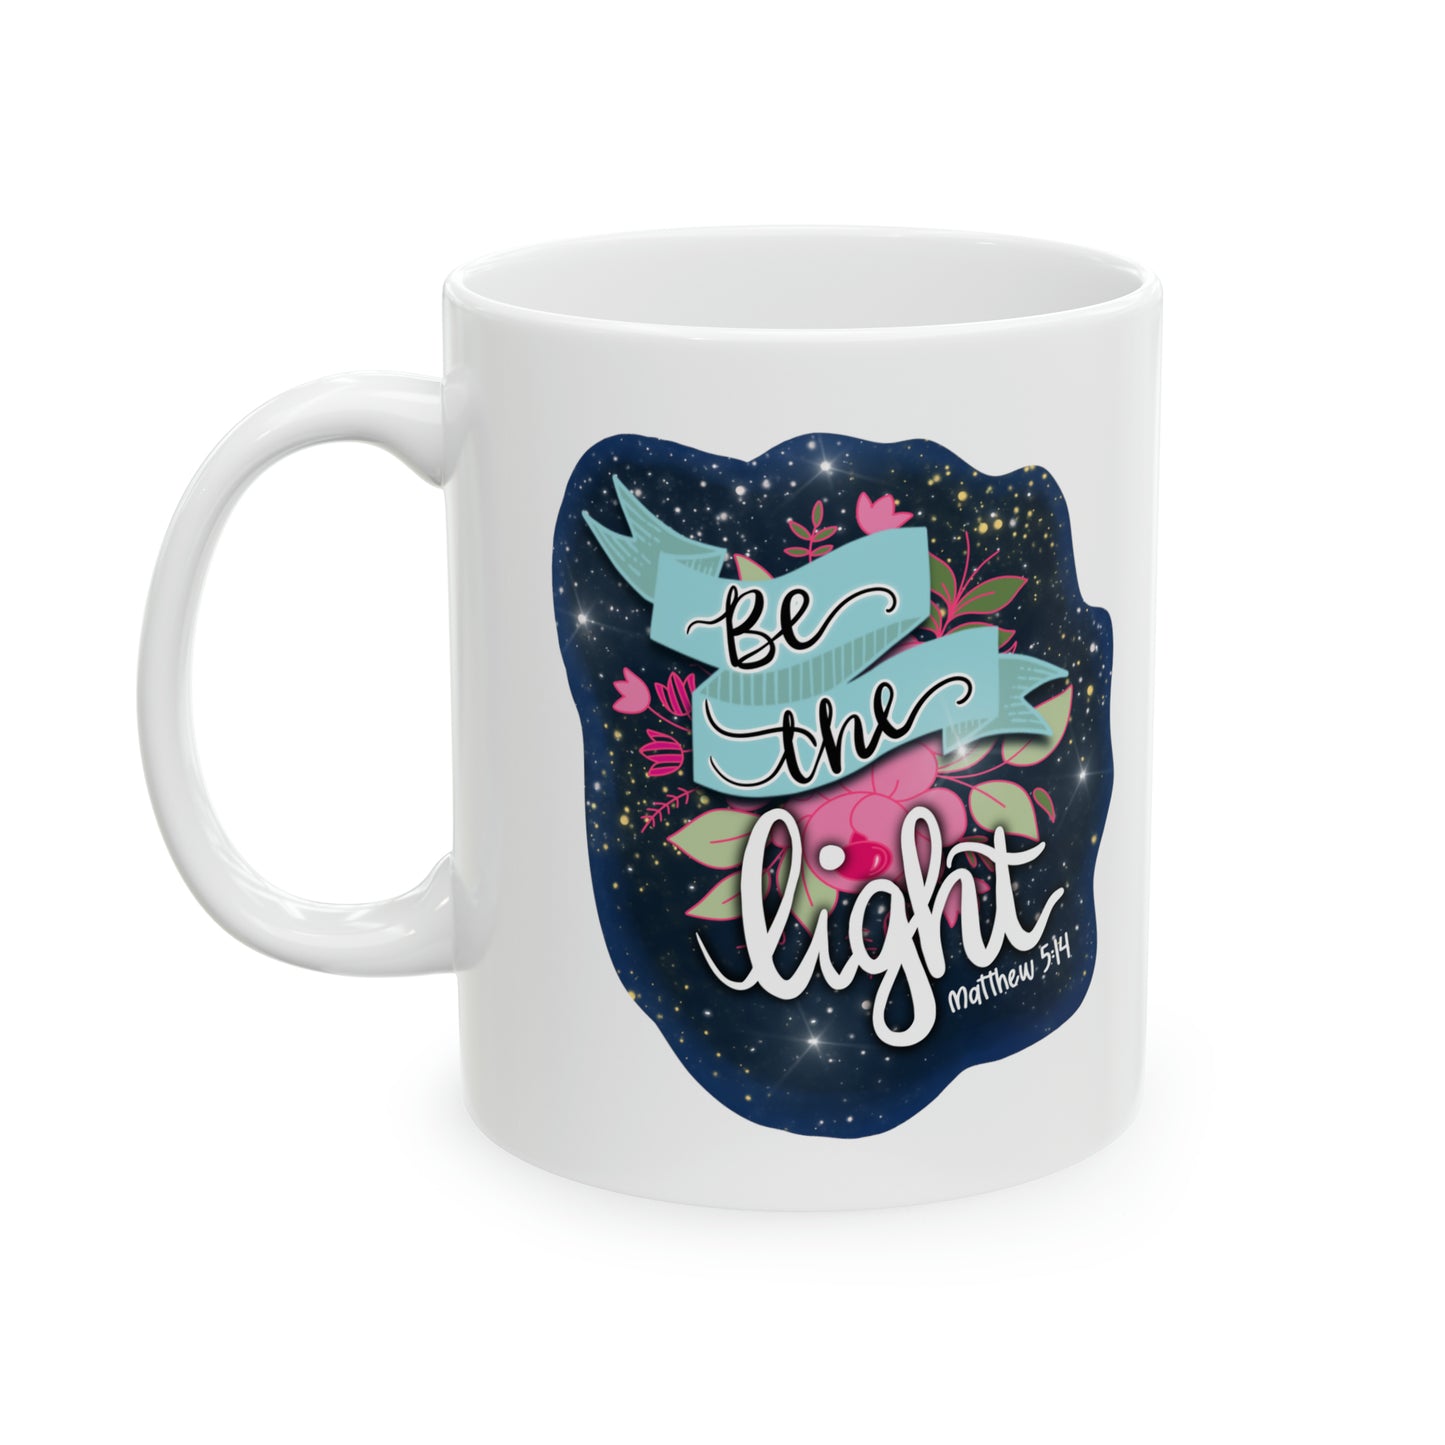 Be The Light Design Ceramic Mug, 11oz